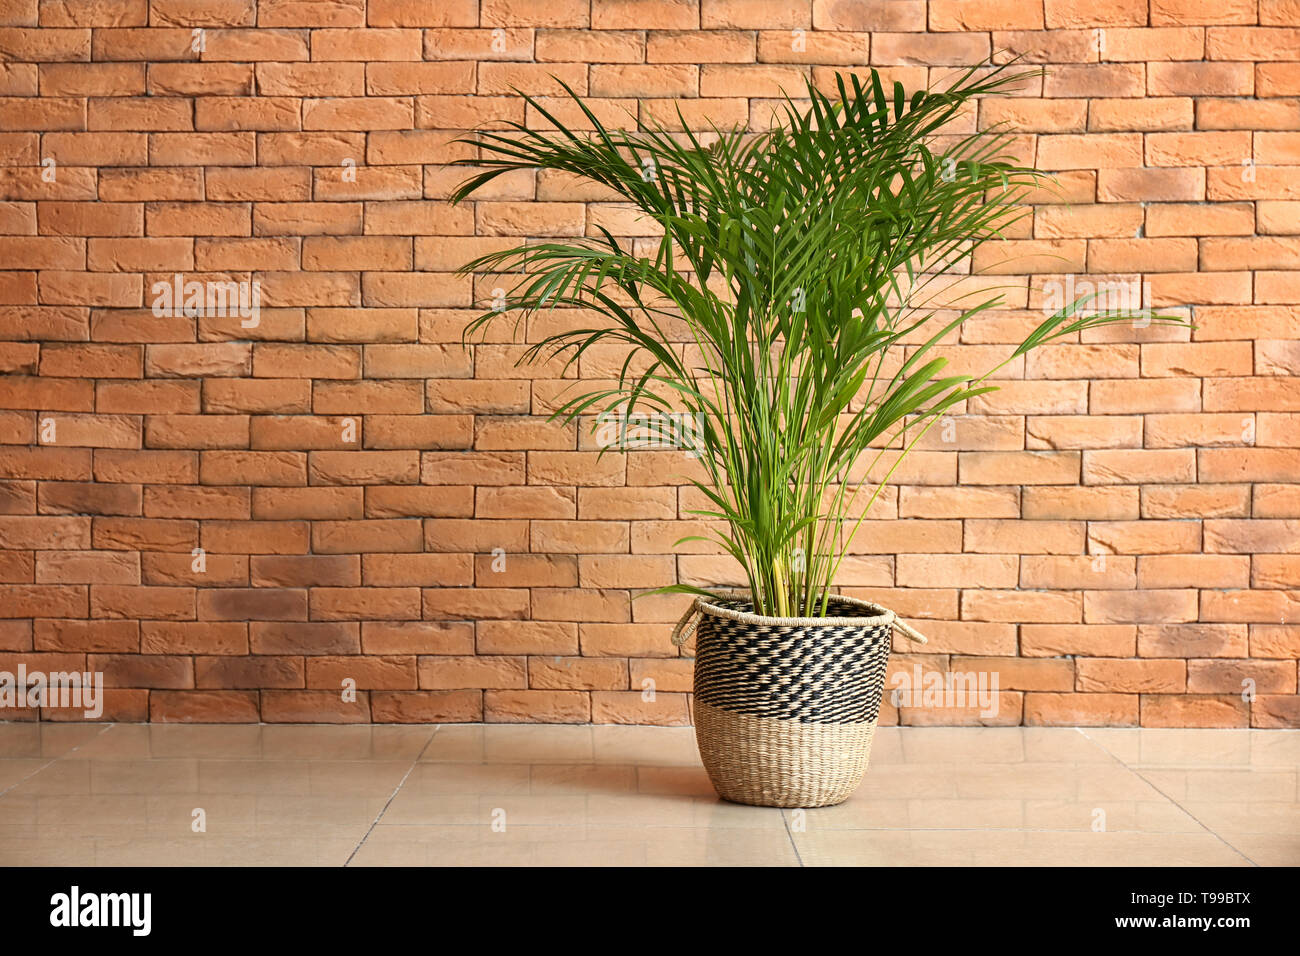 Decorative Areca palm near brick wall Stock Photo